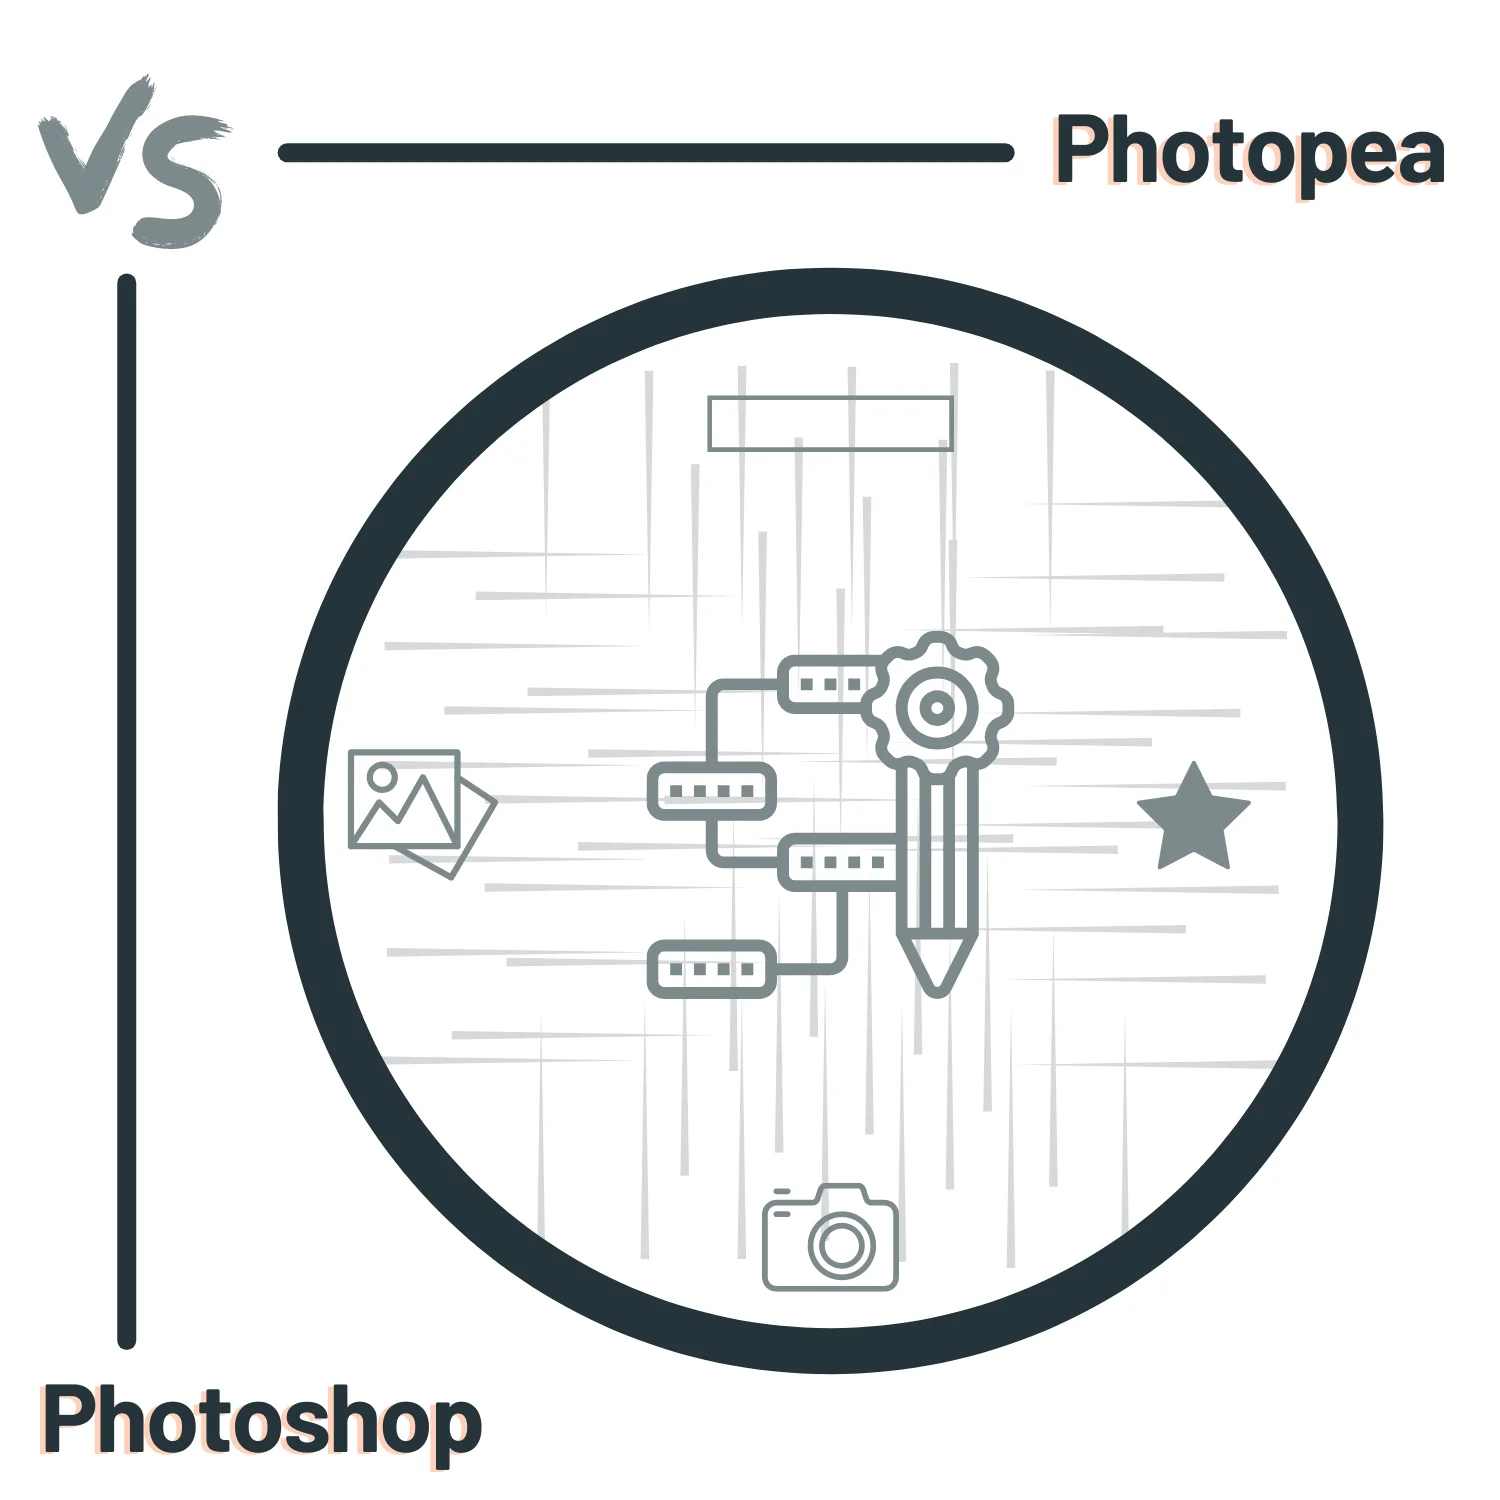 Nếu bạn là một người đam mê nhiếp ảnh và muốn tìm hiểu cách sửa ảnh hiệu quả, thì việc tìm hiểu về các phần mềm chỉnh sửa ảnh như Photo editor là hết sức cần thiết. Hãy xem ảnh liên quan đến keyword này ngay!